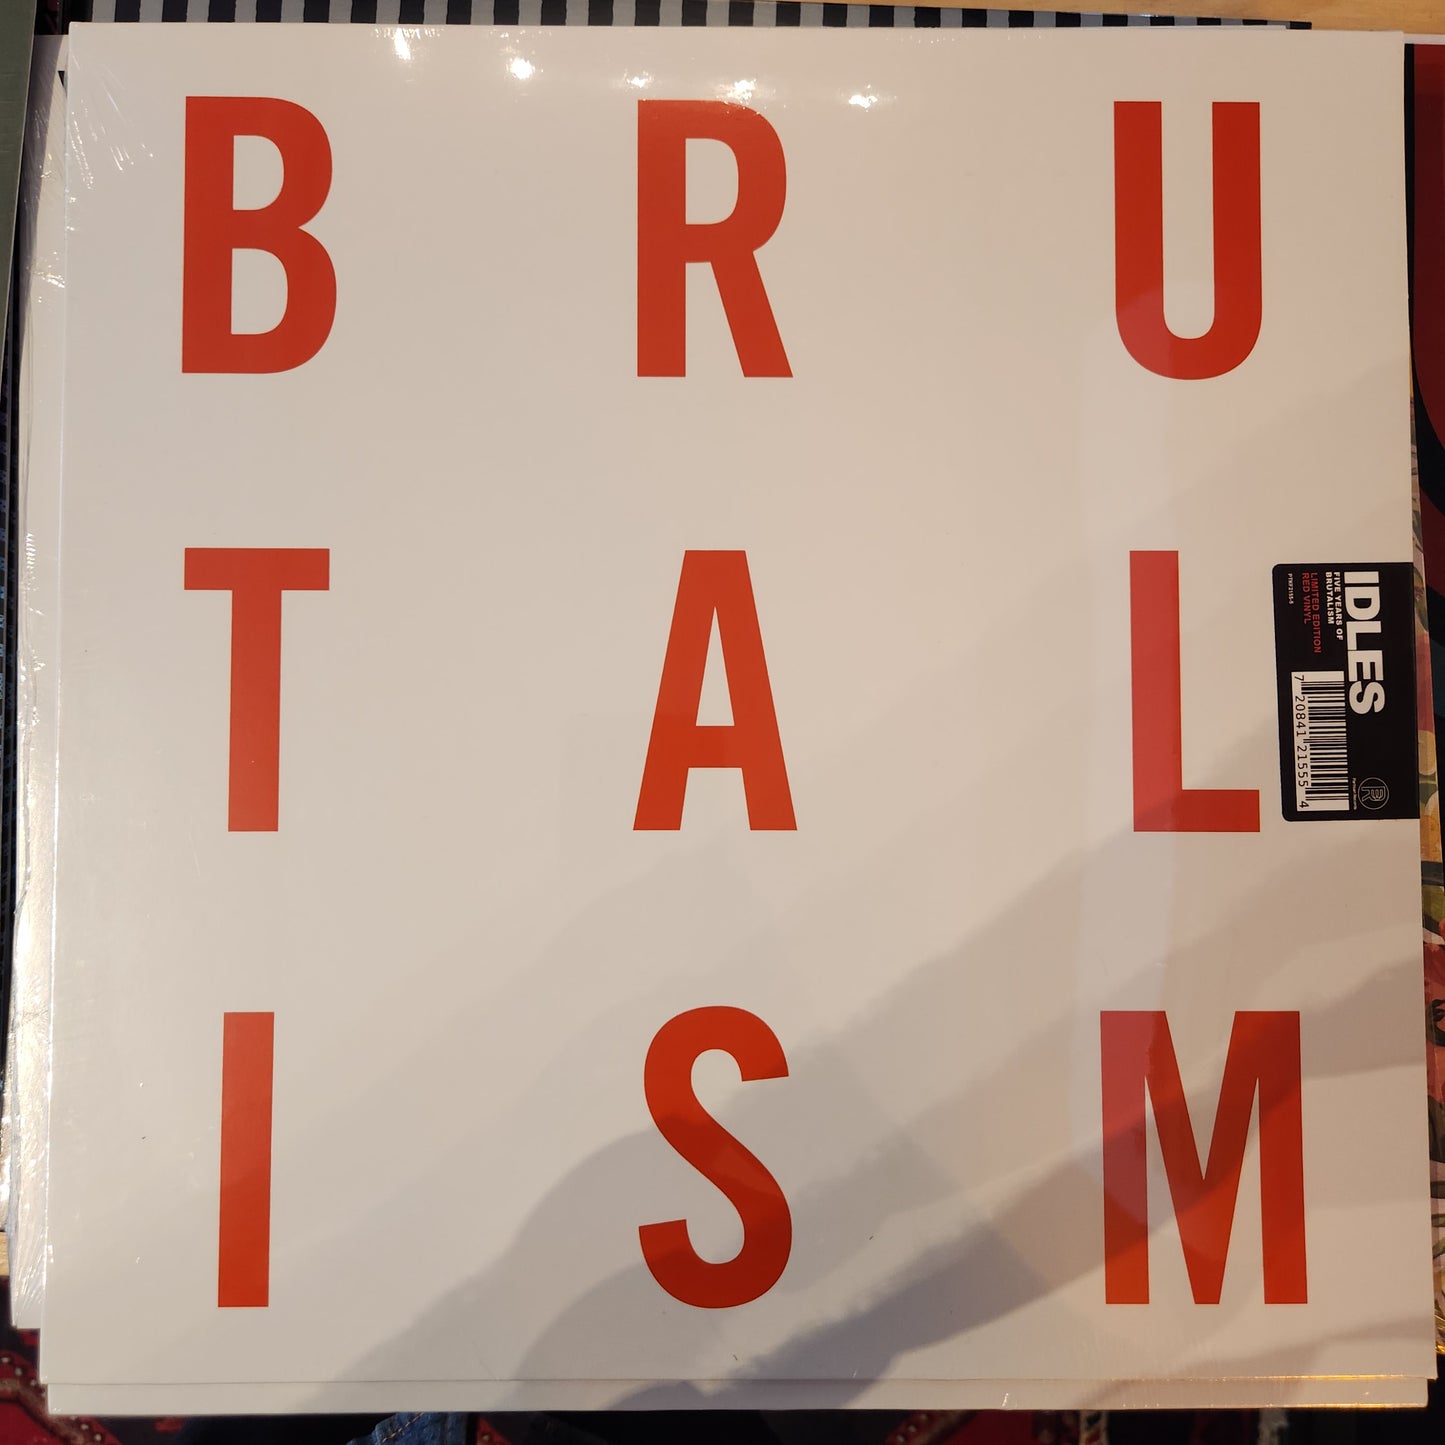 Idles - Brutalism (5 Year anniversary reissue) - Vinyl LP